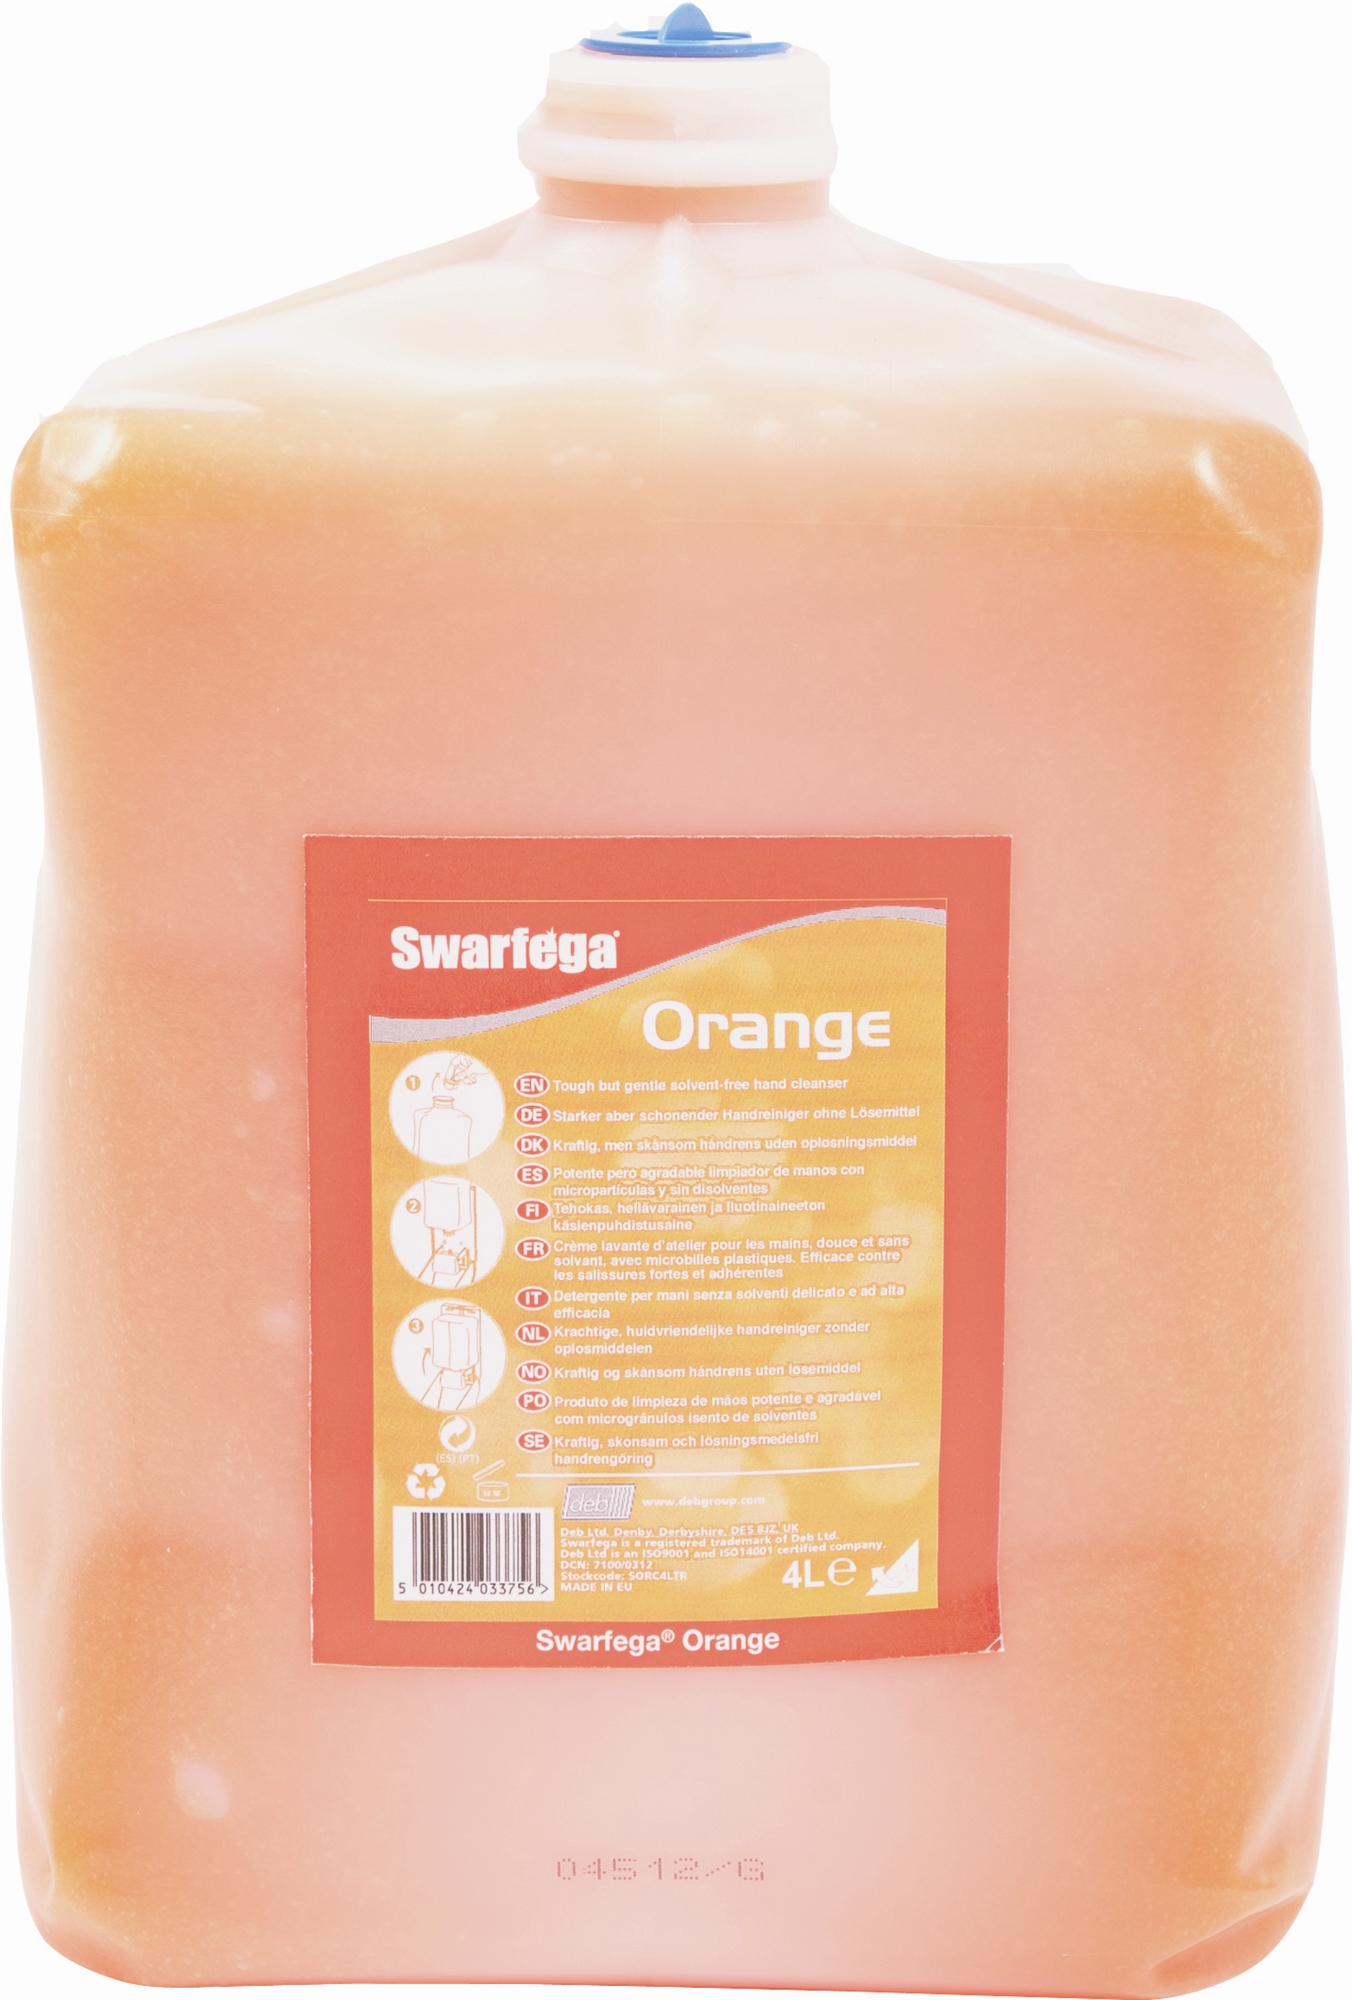 Swarfegat orange savon microbilles - Voussert